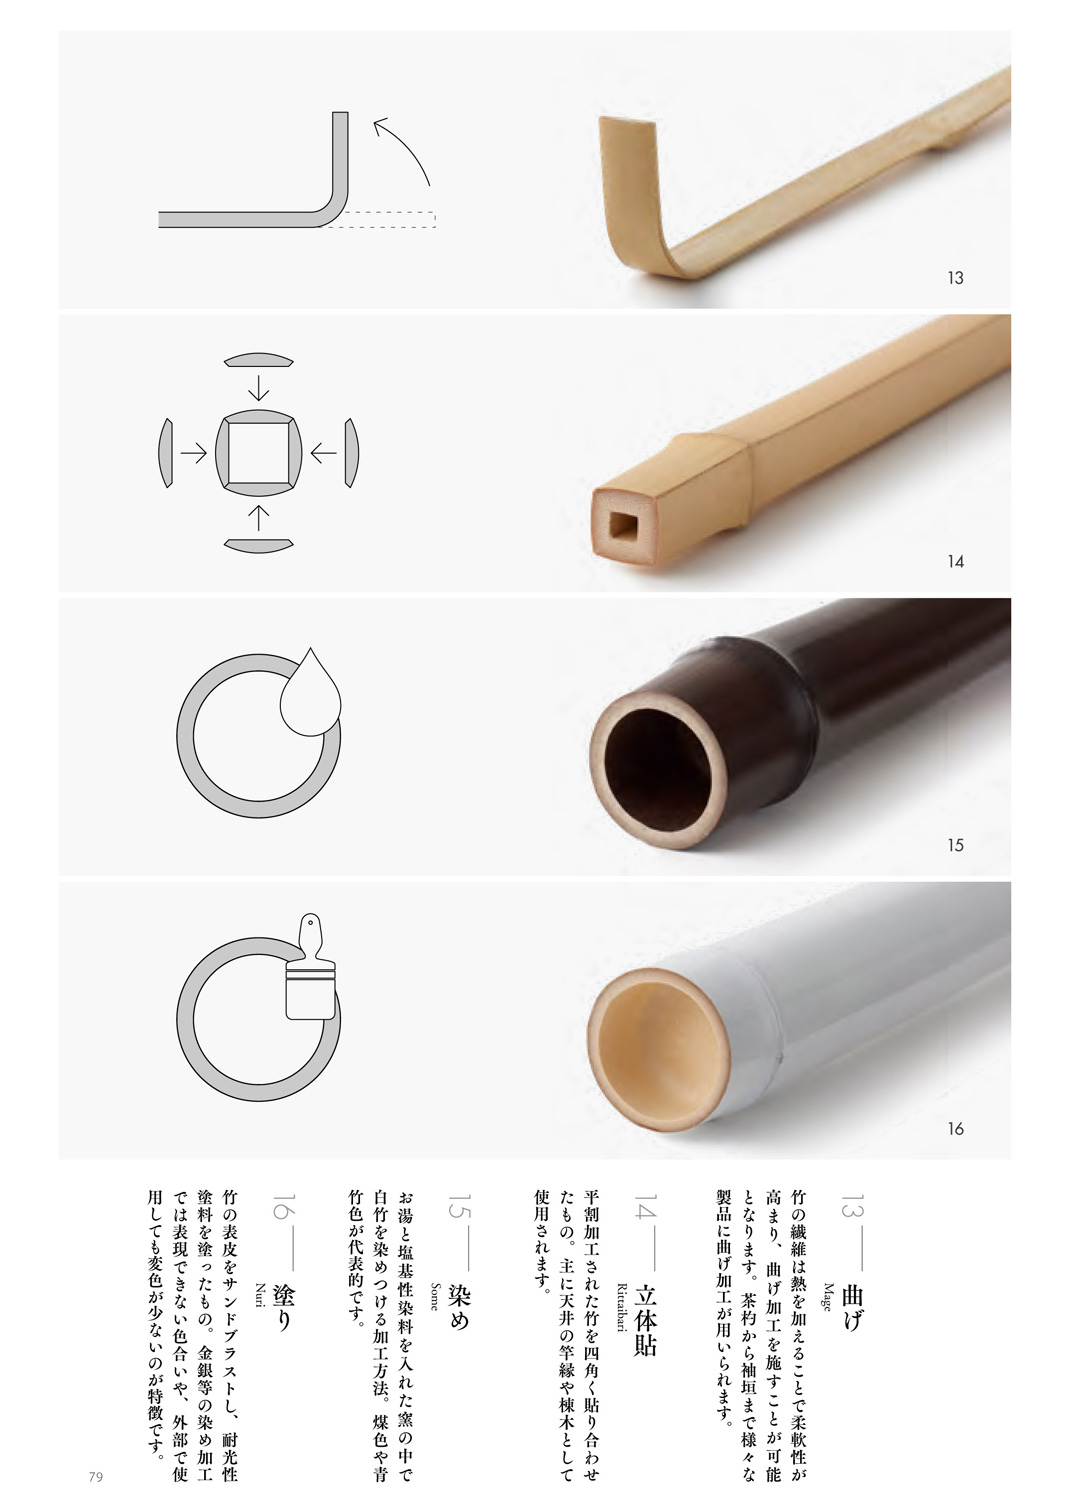 竹定商店 竹子用材各种做法 日本 竹子 制作工艺 logo设计 vi设计 空间设计